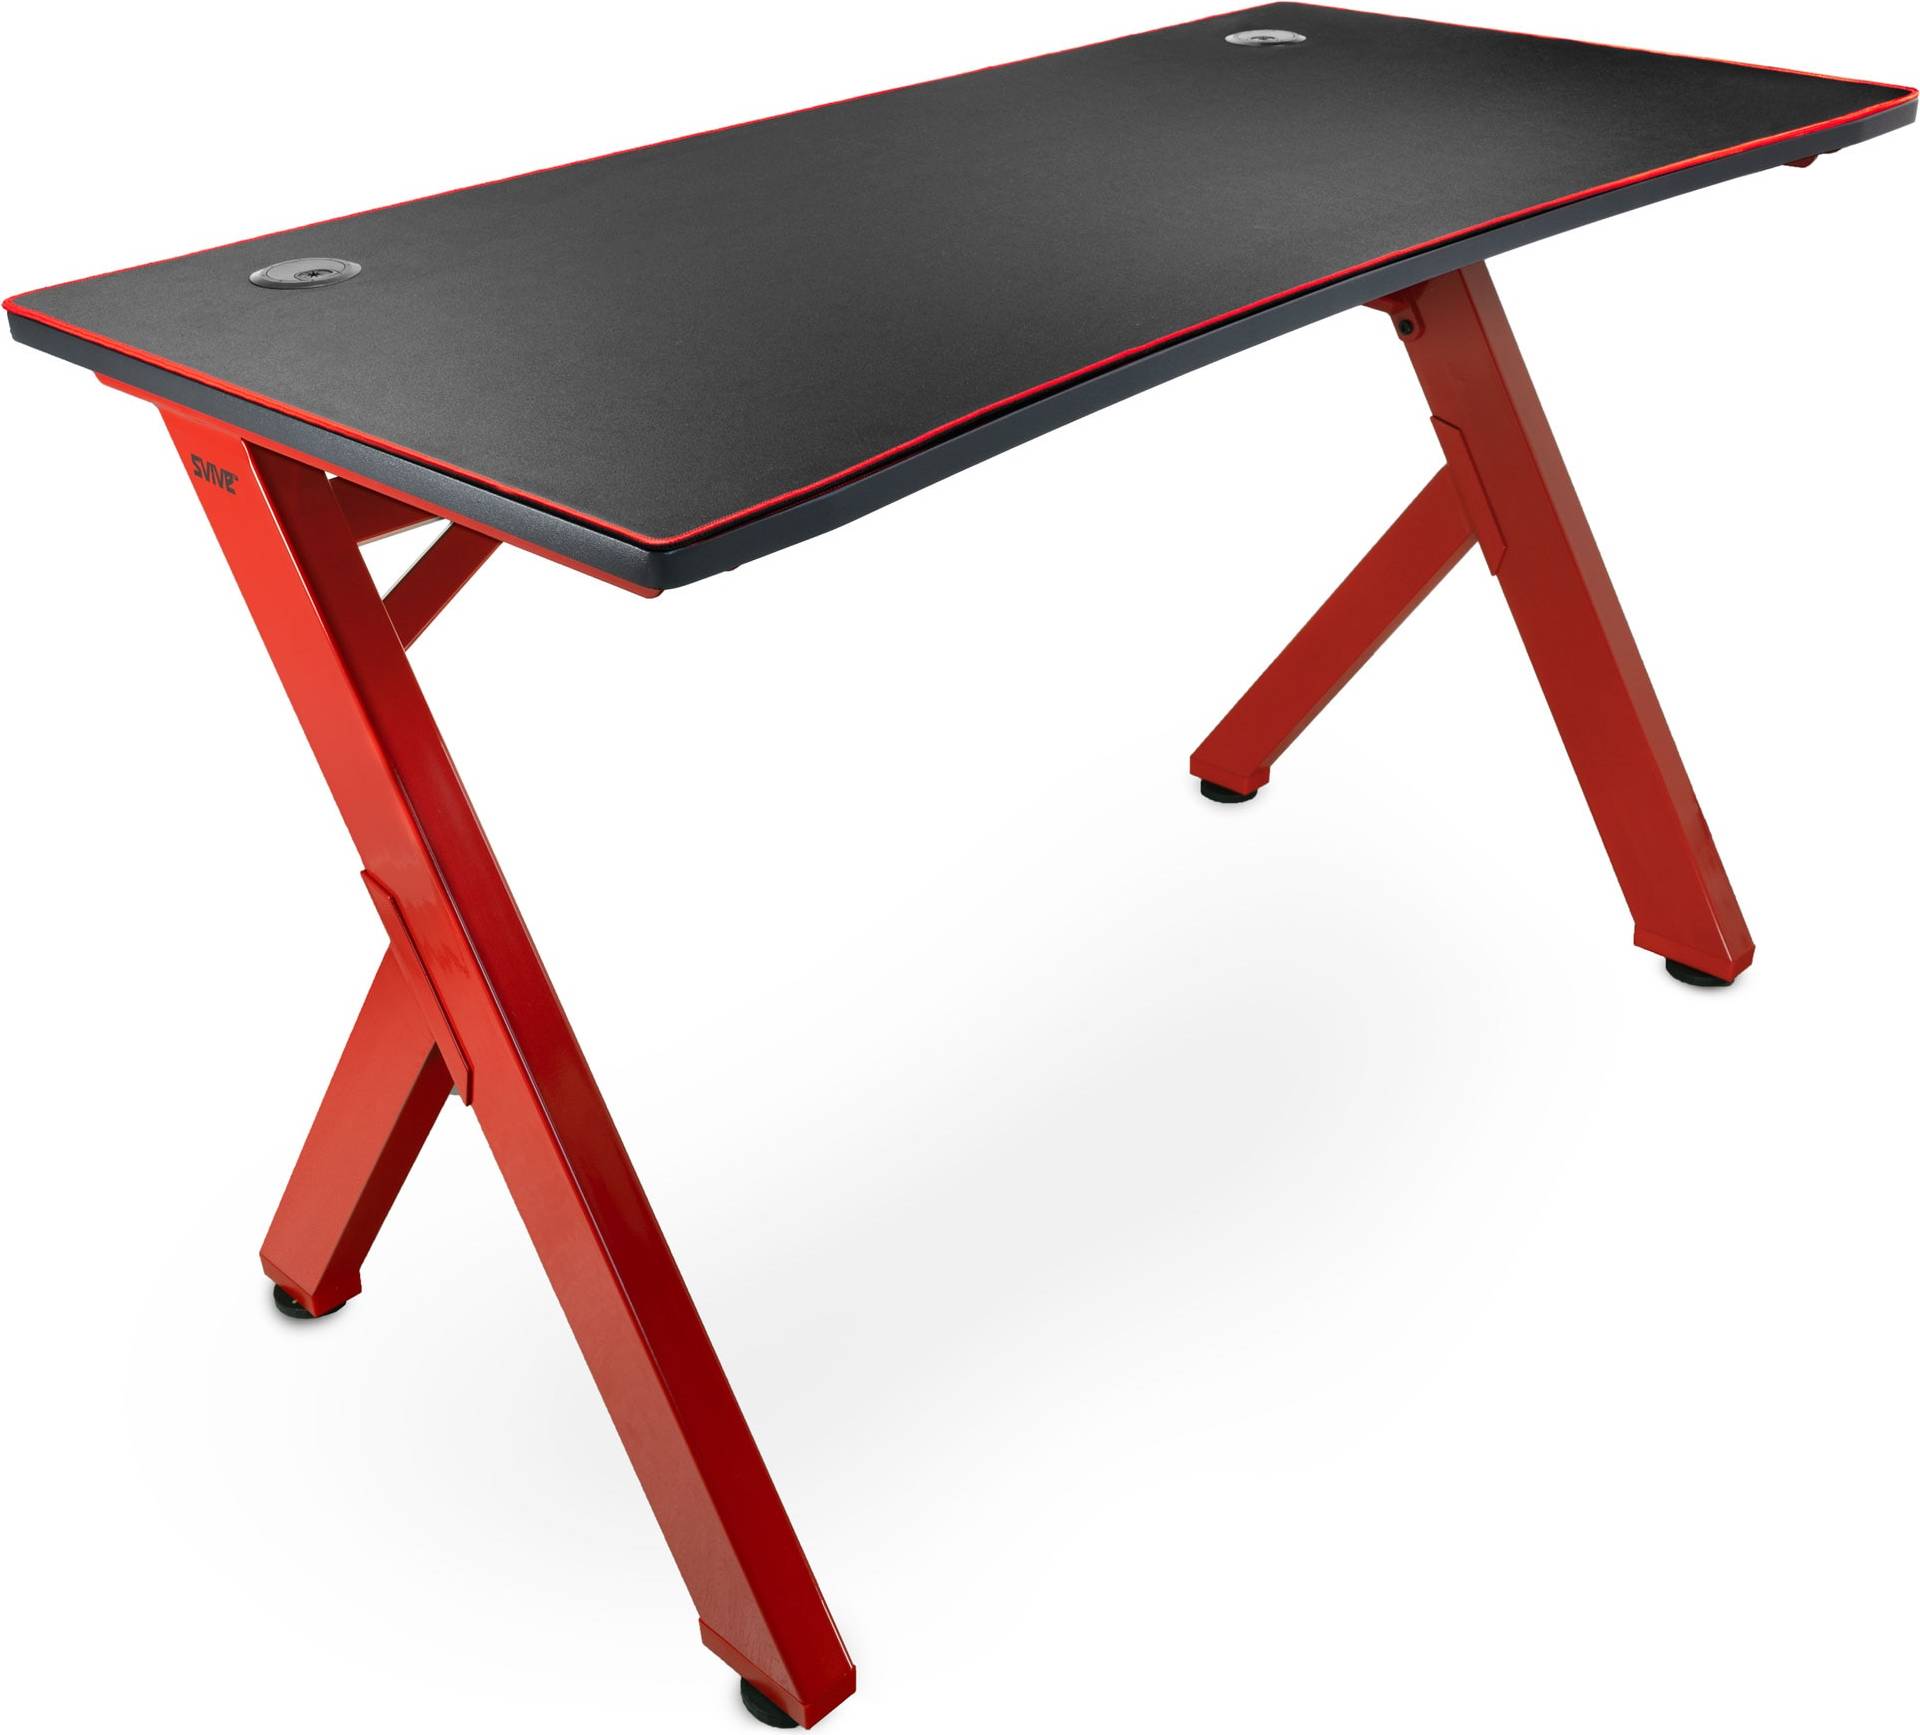  Bild på Svive Cygnus Gaming Desk - Red gamingbord